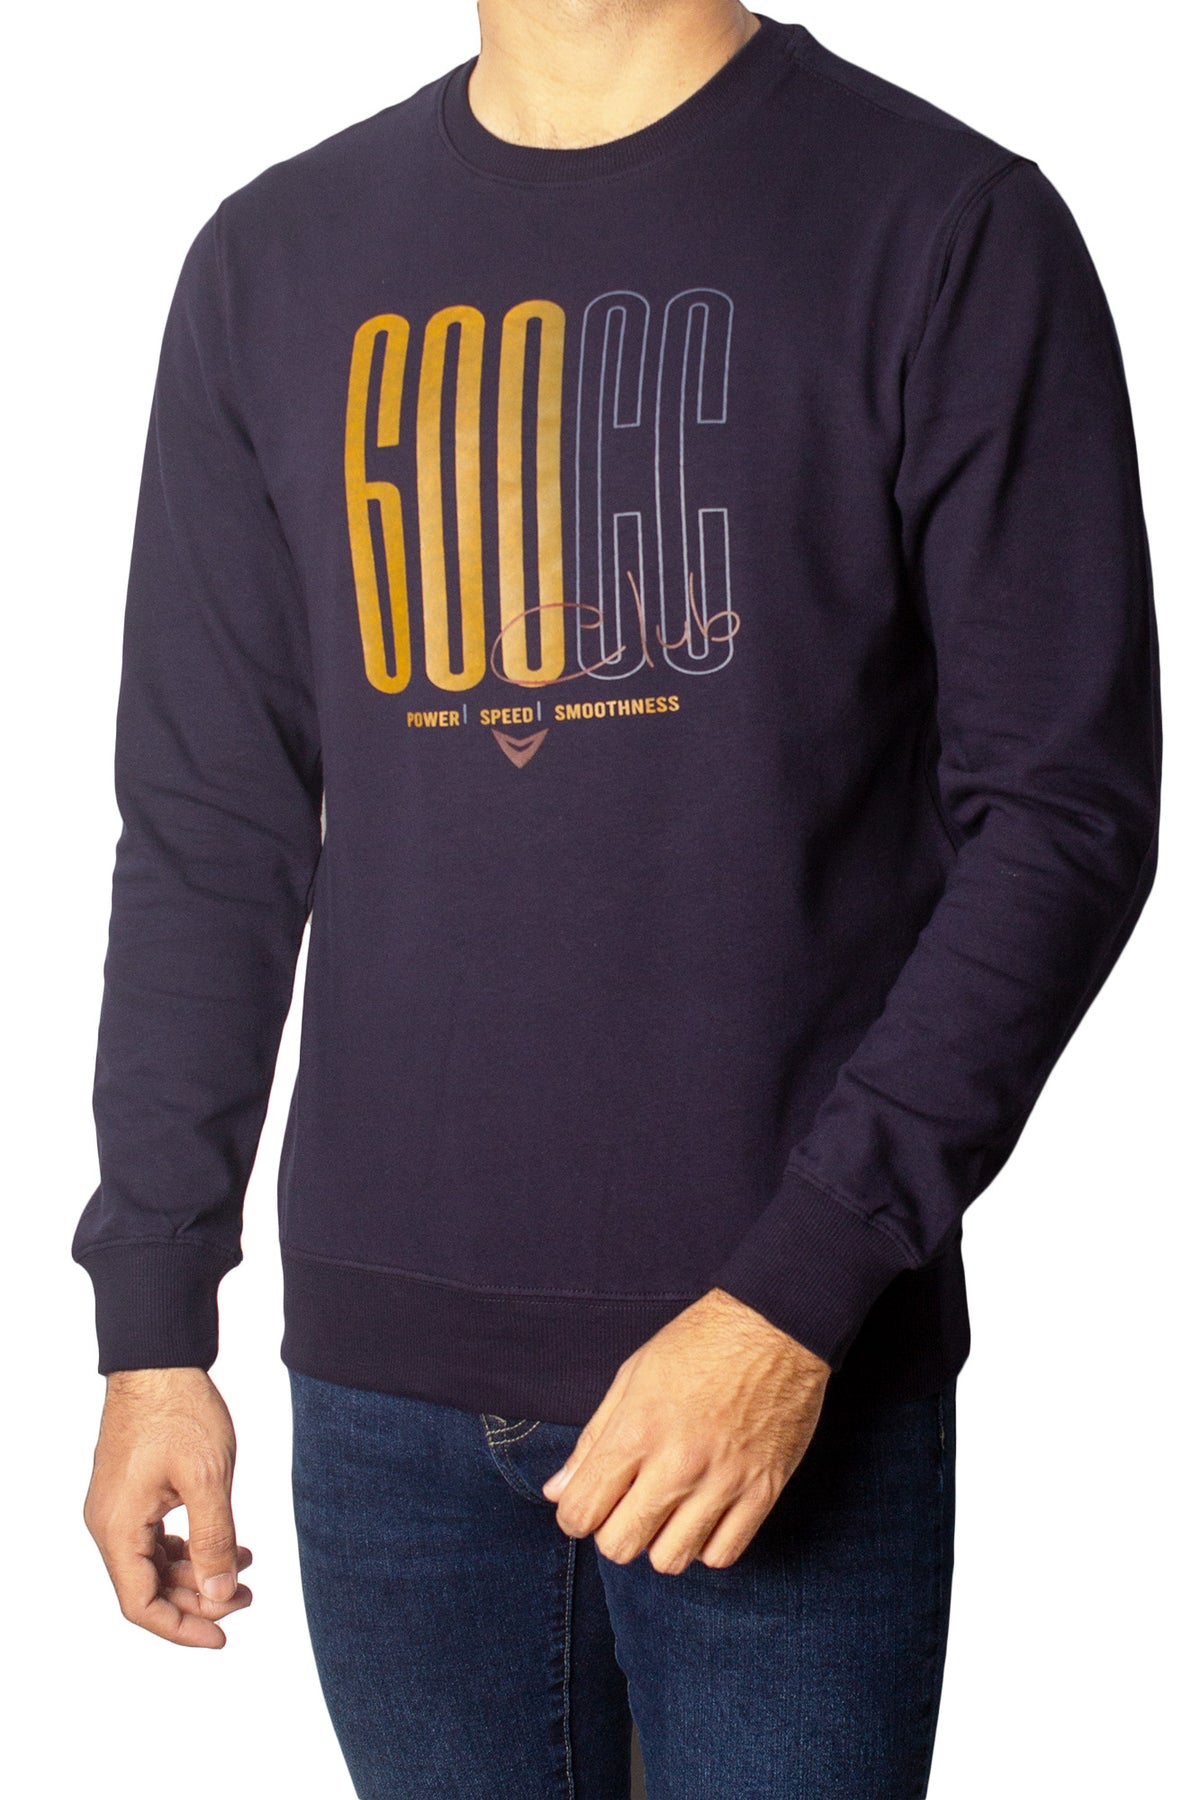 Printed 600CC Full Sleeves T-Shirt Tsh-6846 Navy